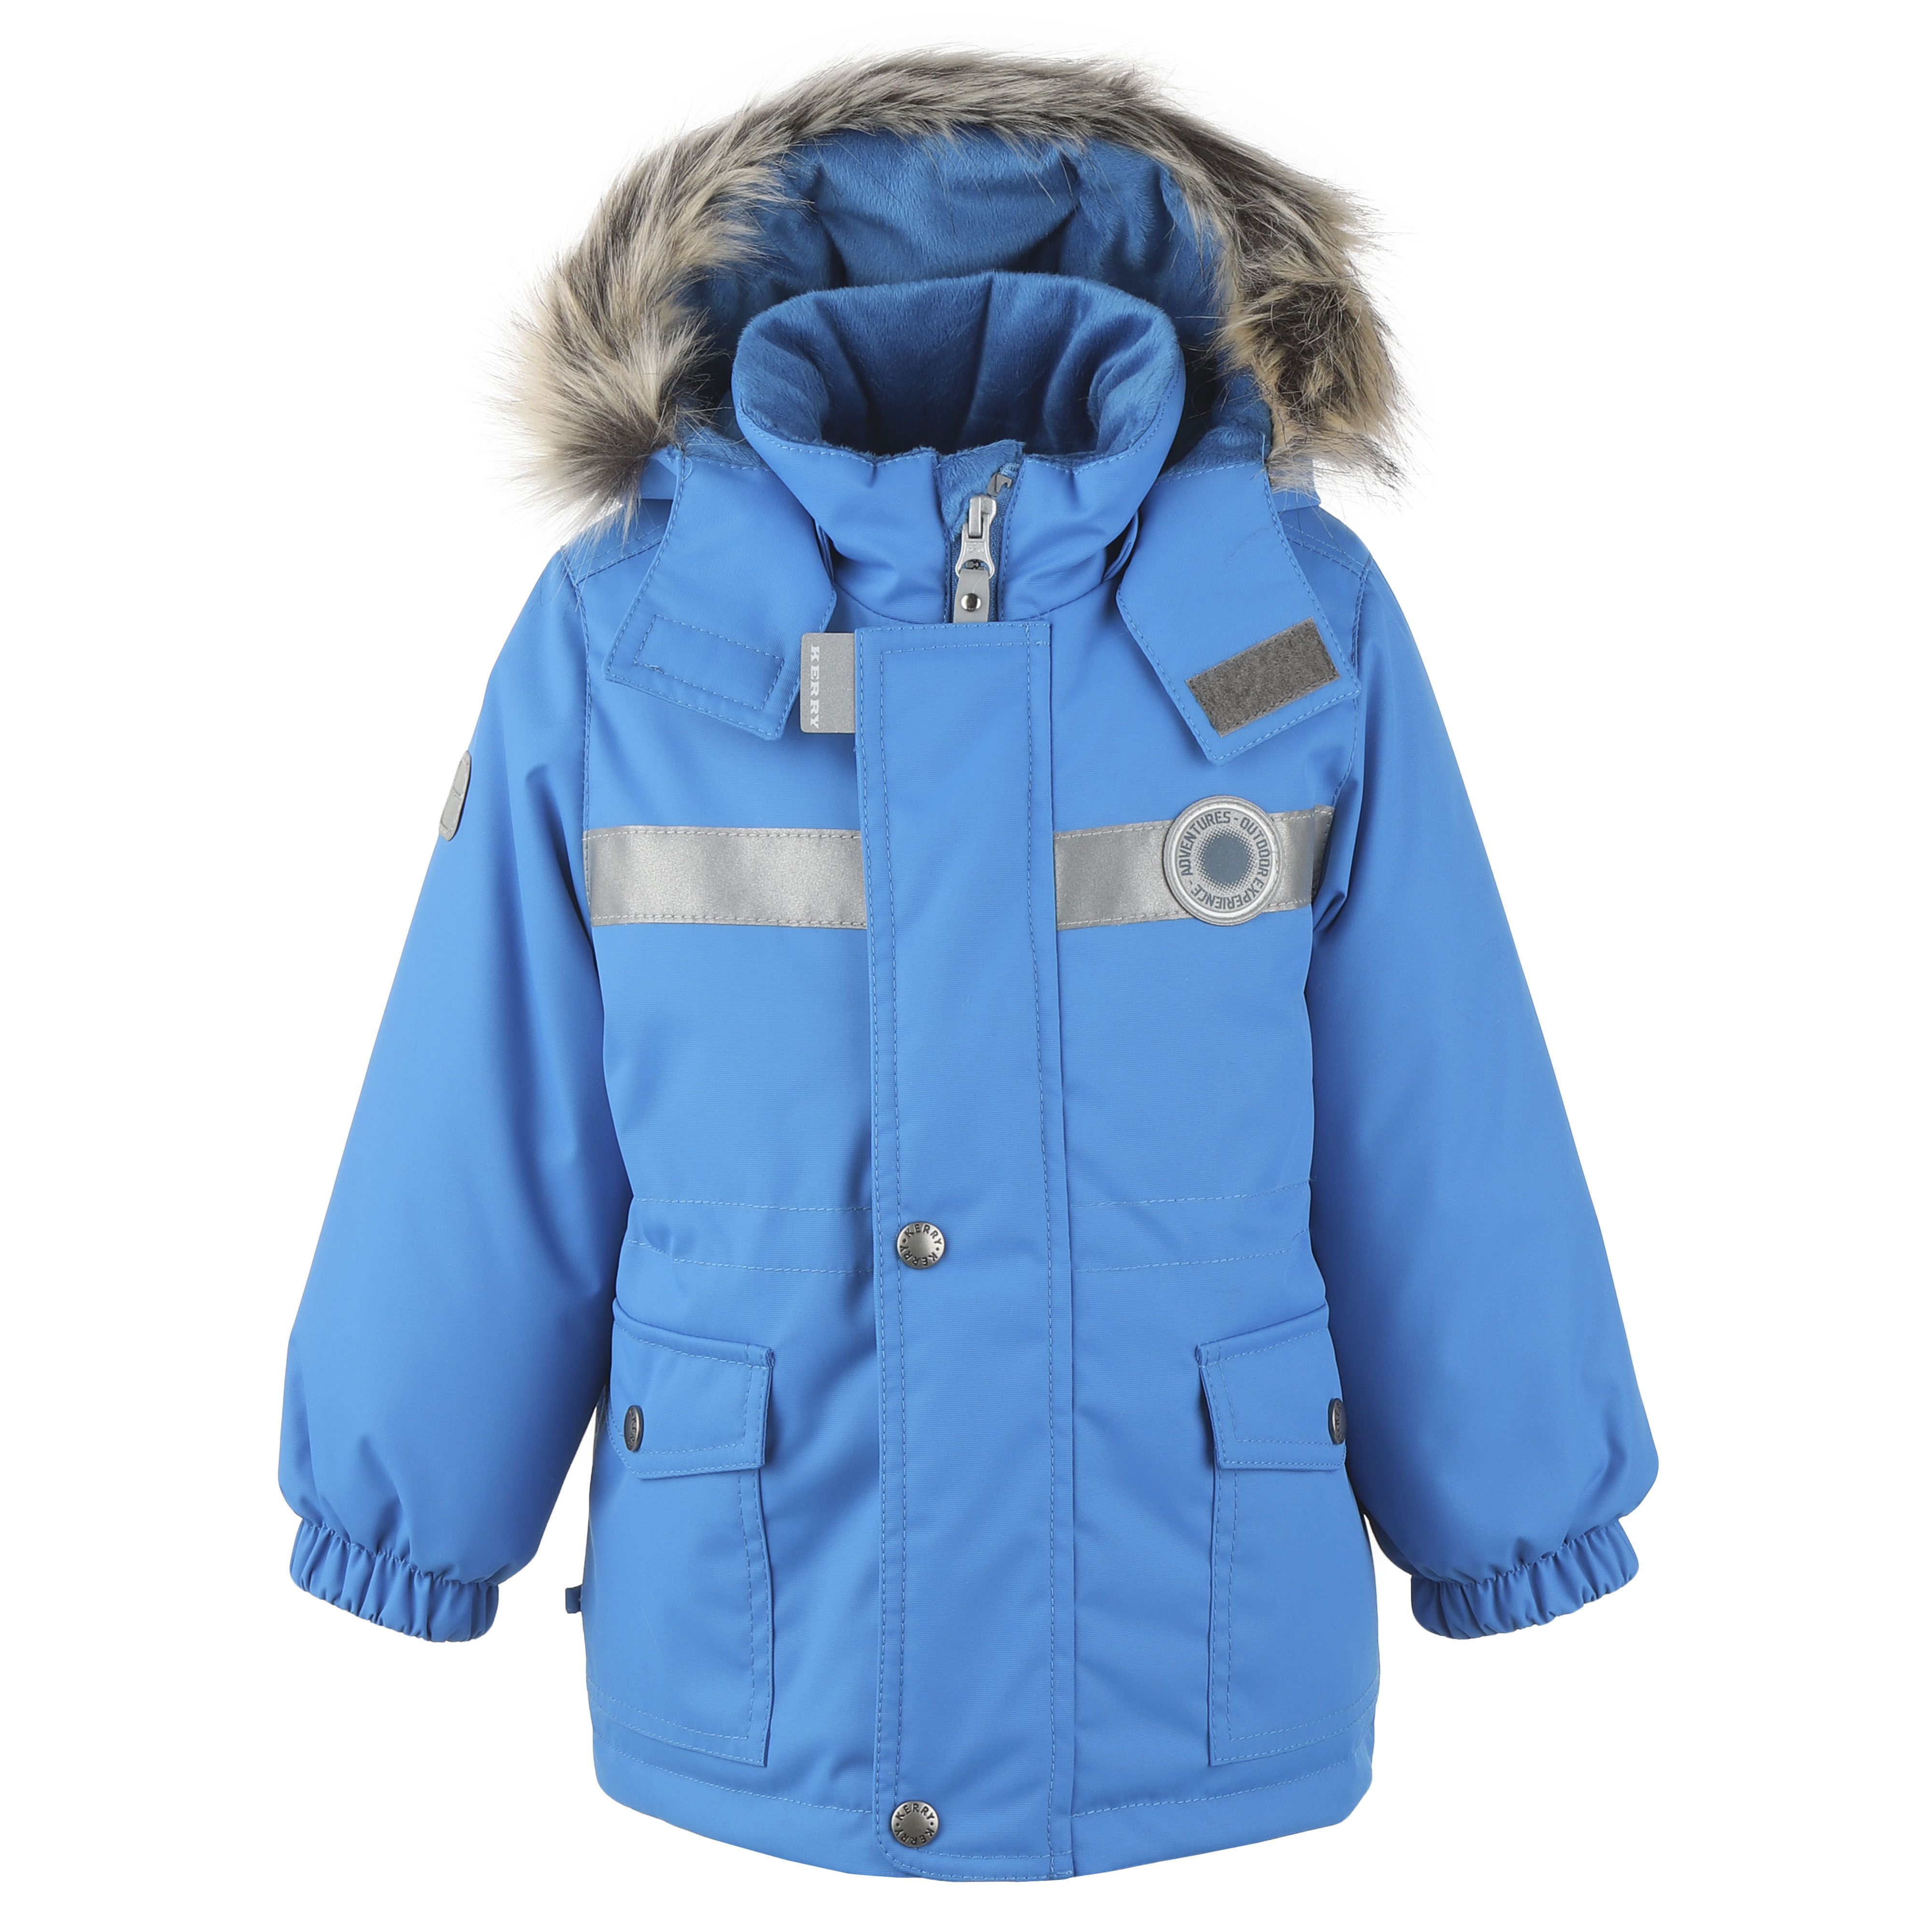 Куртка детская KERRY K20411_2021_NM цв. синий р. 80